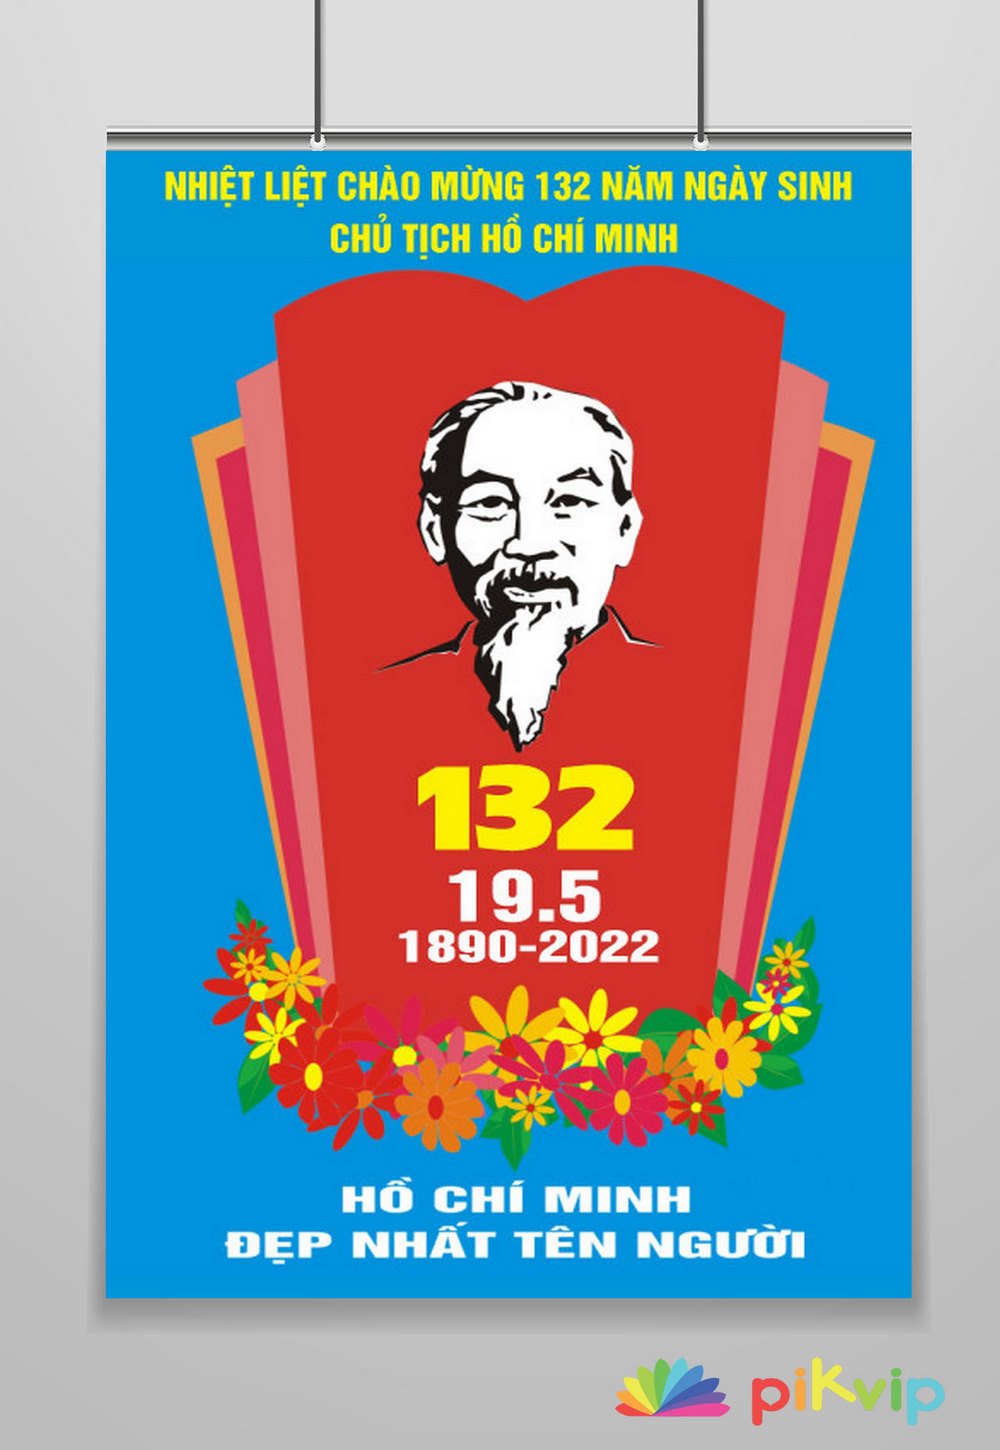 Mẫu pano kỷ niệm 132 năm ngày sinh chủ tịch Hồ Chí Minh